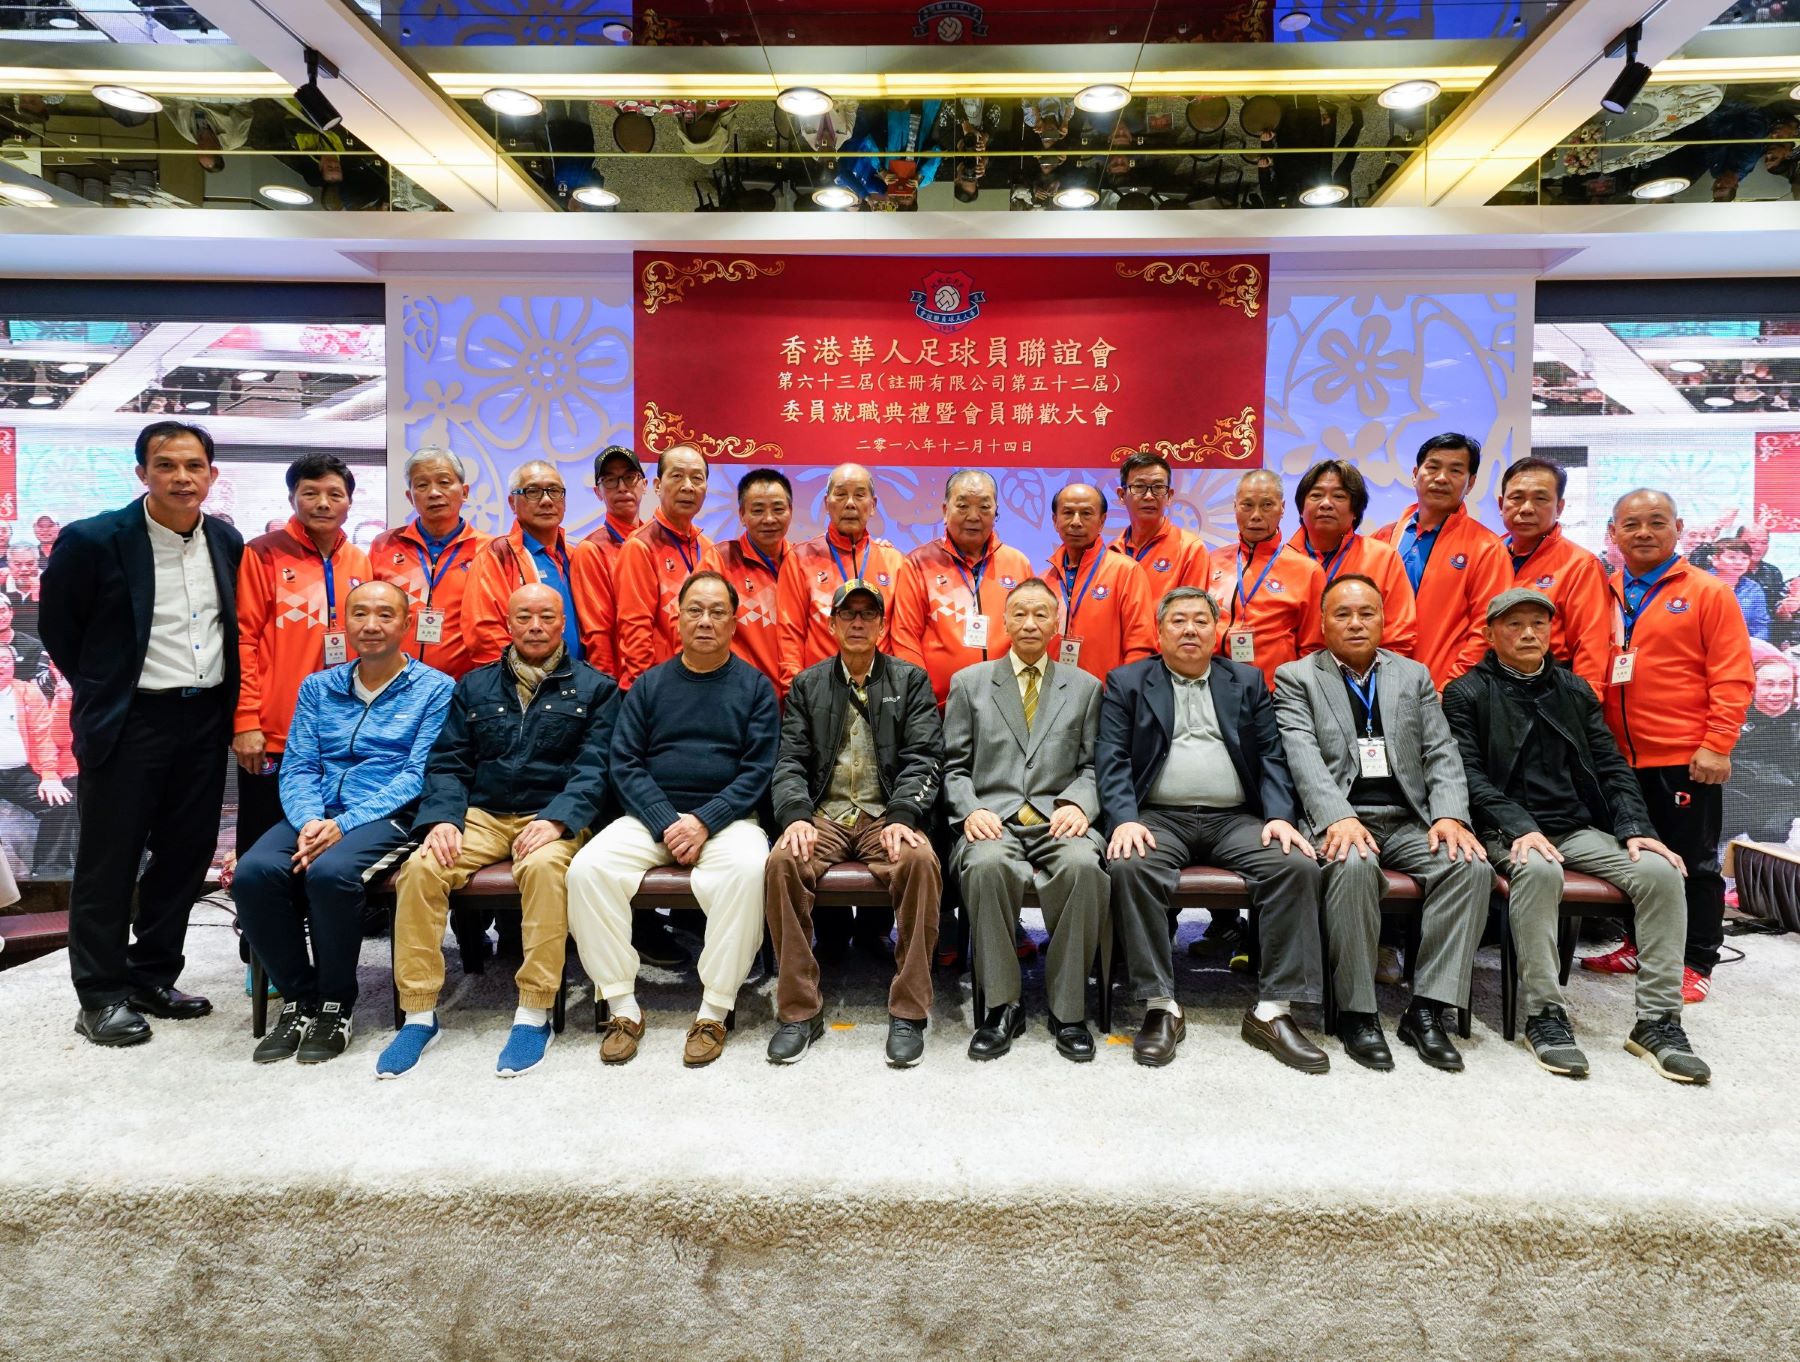 2018-12-14 (第63屆)香港華人足球會63rd 聯歡大會001